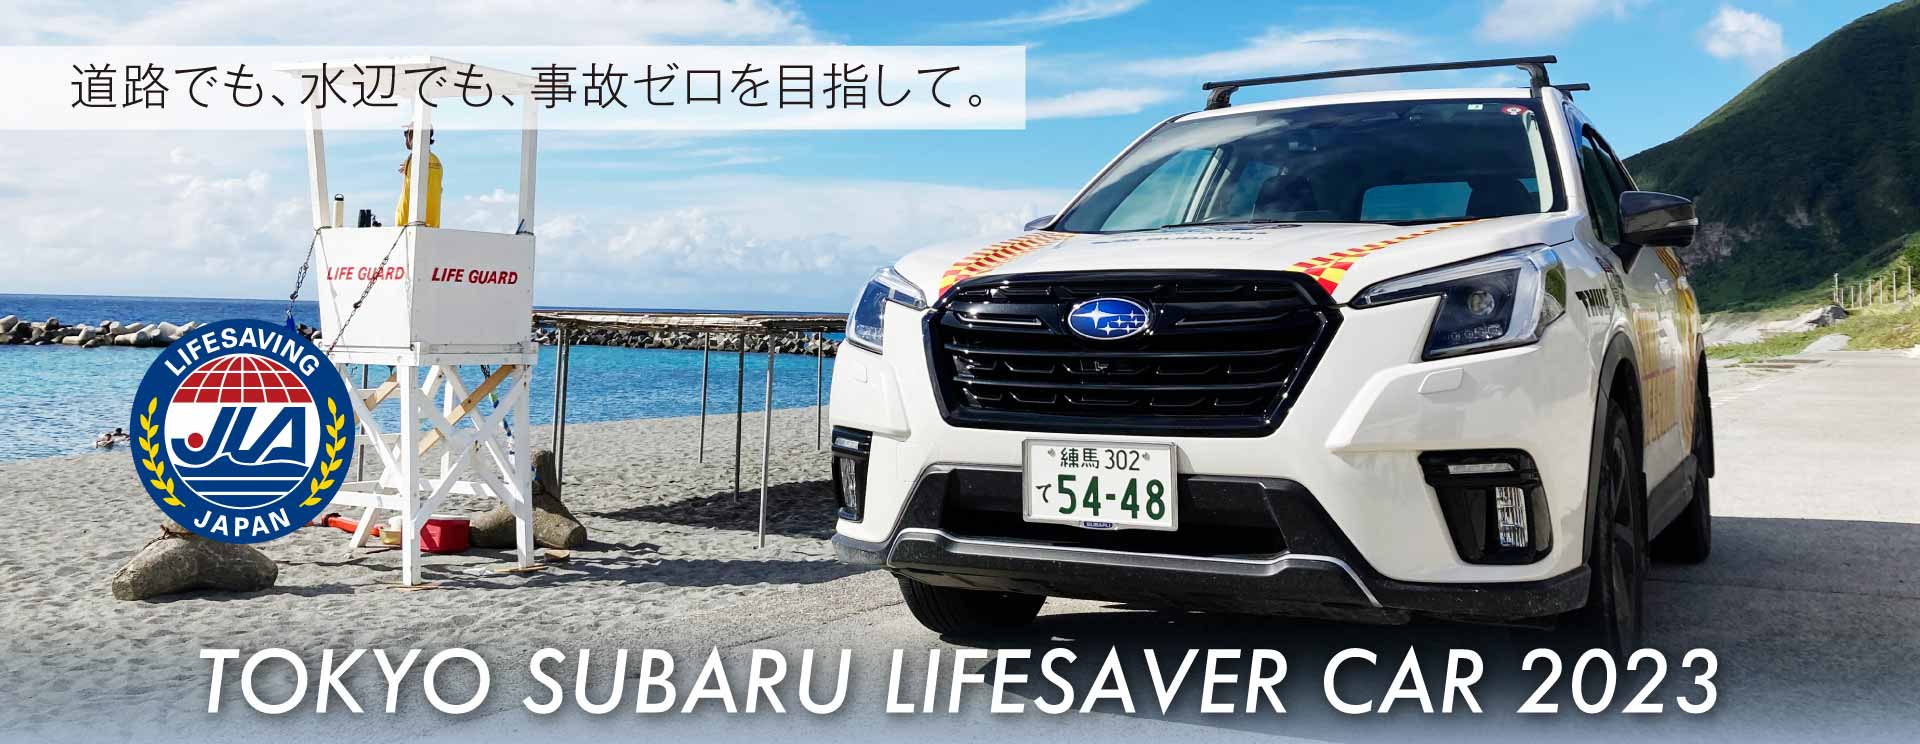 東京スバル TOKYO SUBARU LIFESAVER CAR 2023 道路でも、水辺でも、事故ゼロを目指して。